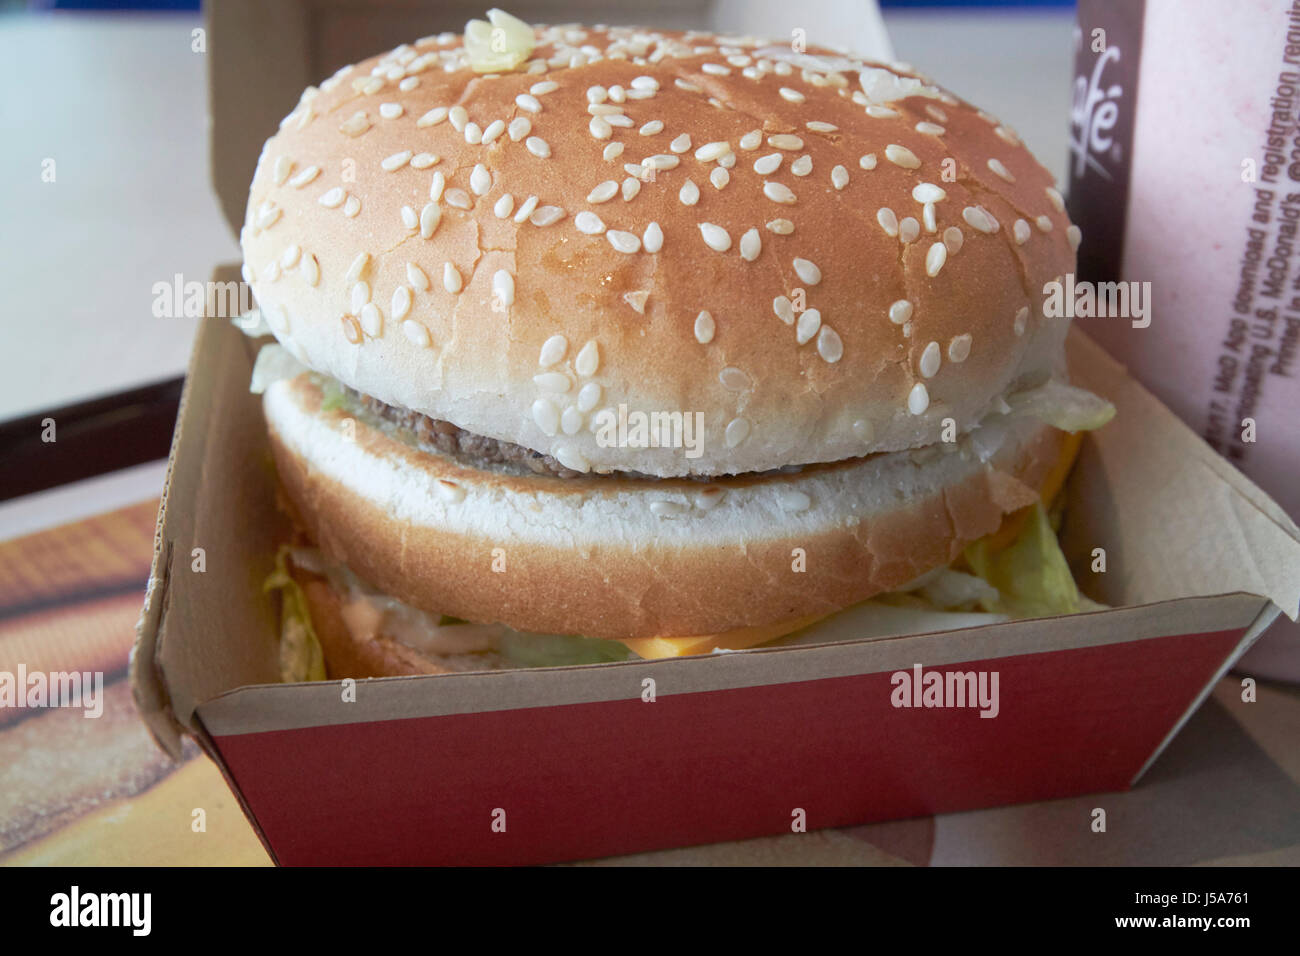 McDonalds big mac burger usa Stock Photo